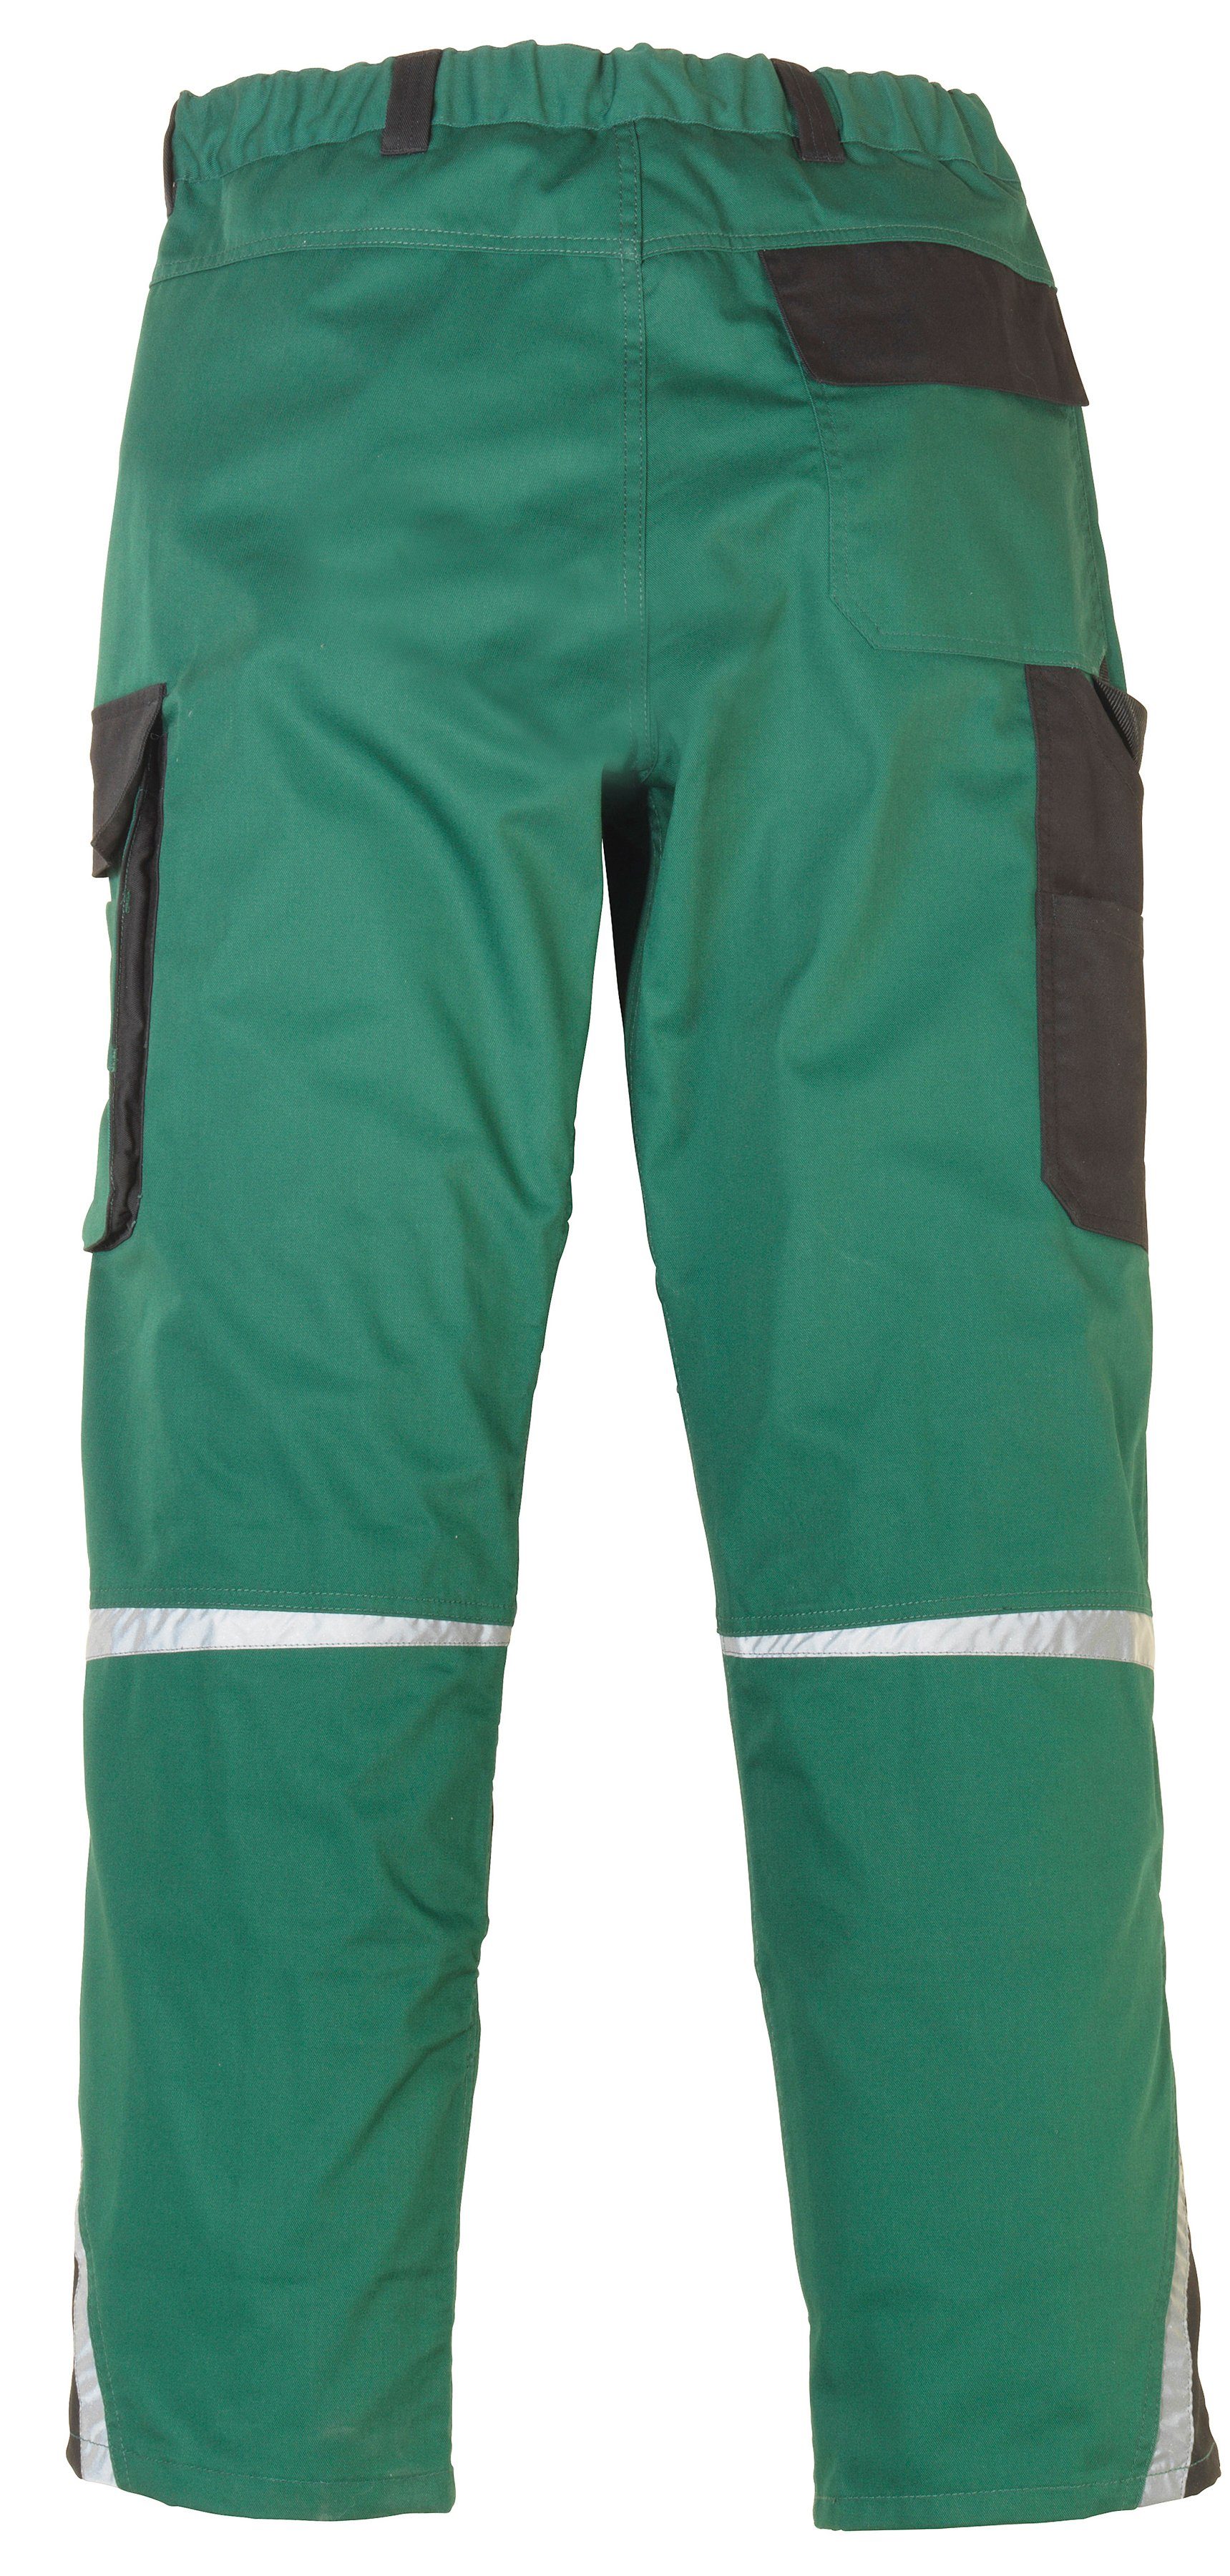 Arbeitshose grün-schwarz mit Pull Knieverstärkung safety& more